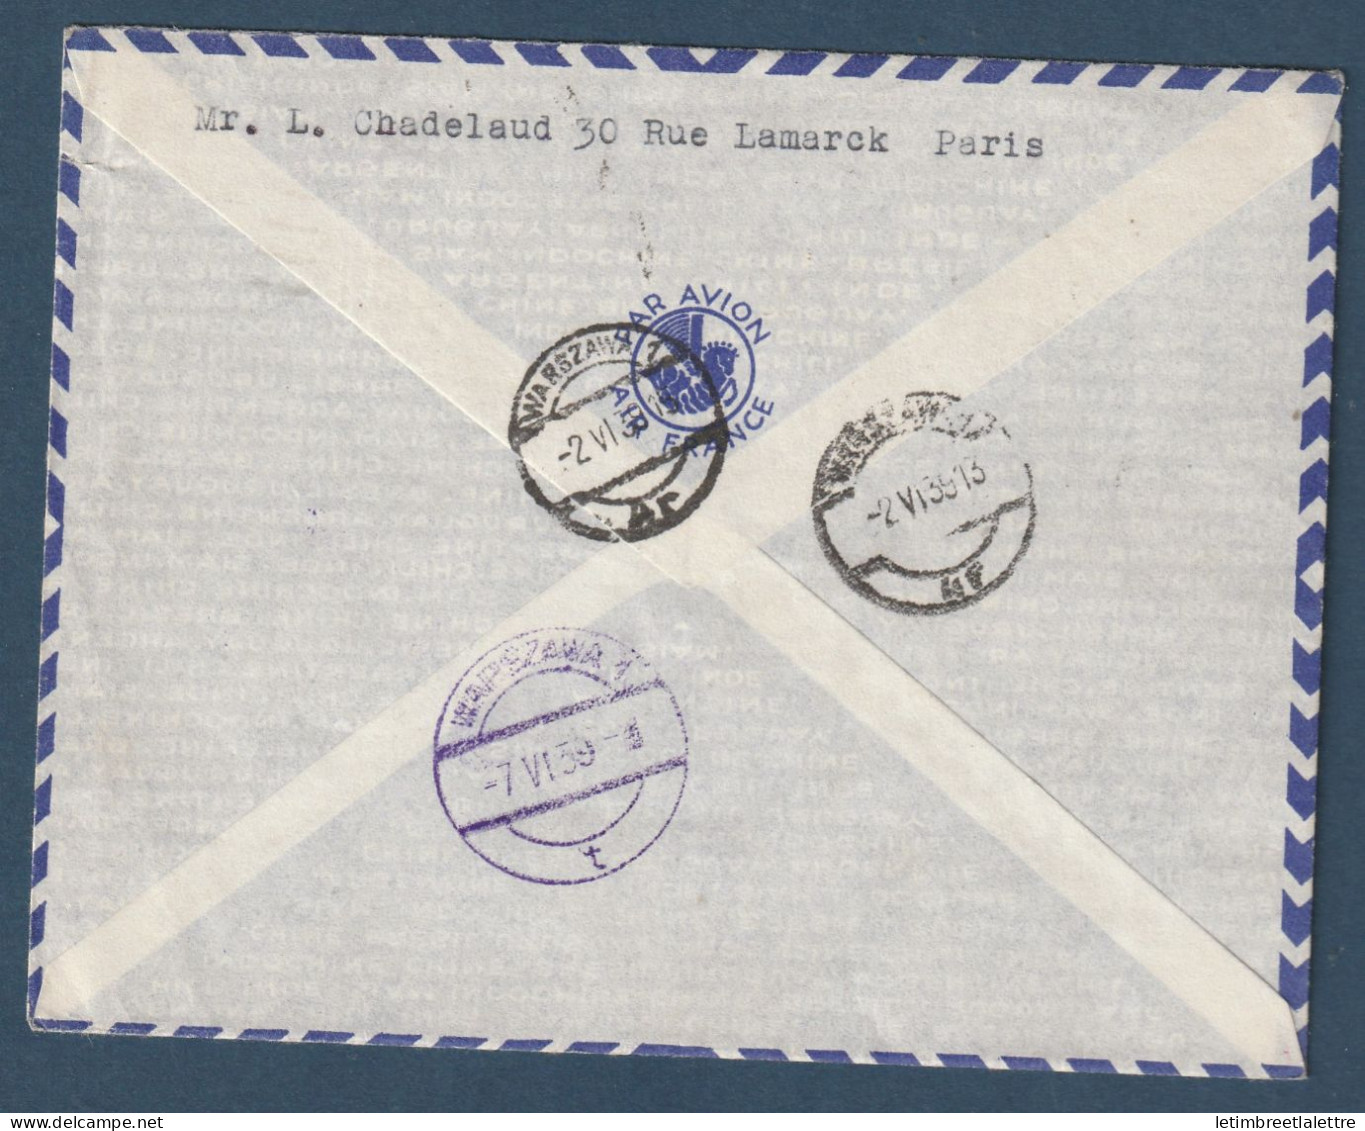 France - Service Postale Aérien Sans Surtaxe - France - Finlande - France Pologne - Retour à L'envoyeur - 1er Juin 1939 - Premiers Vols